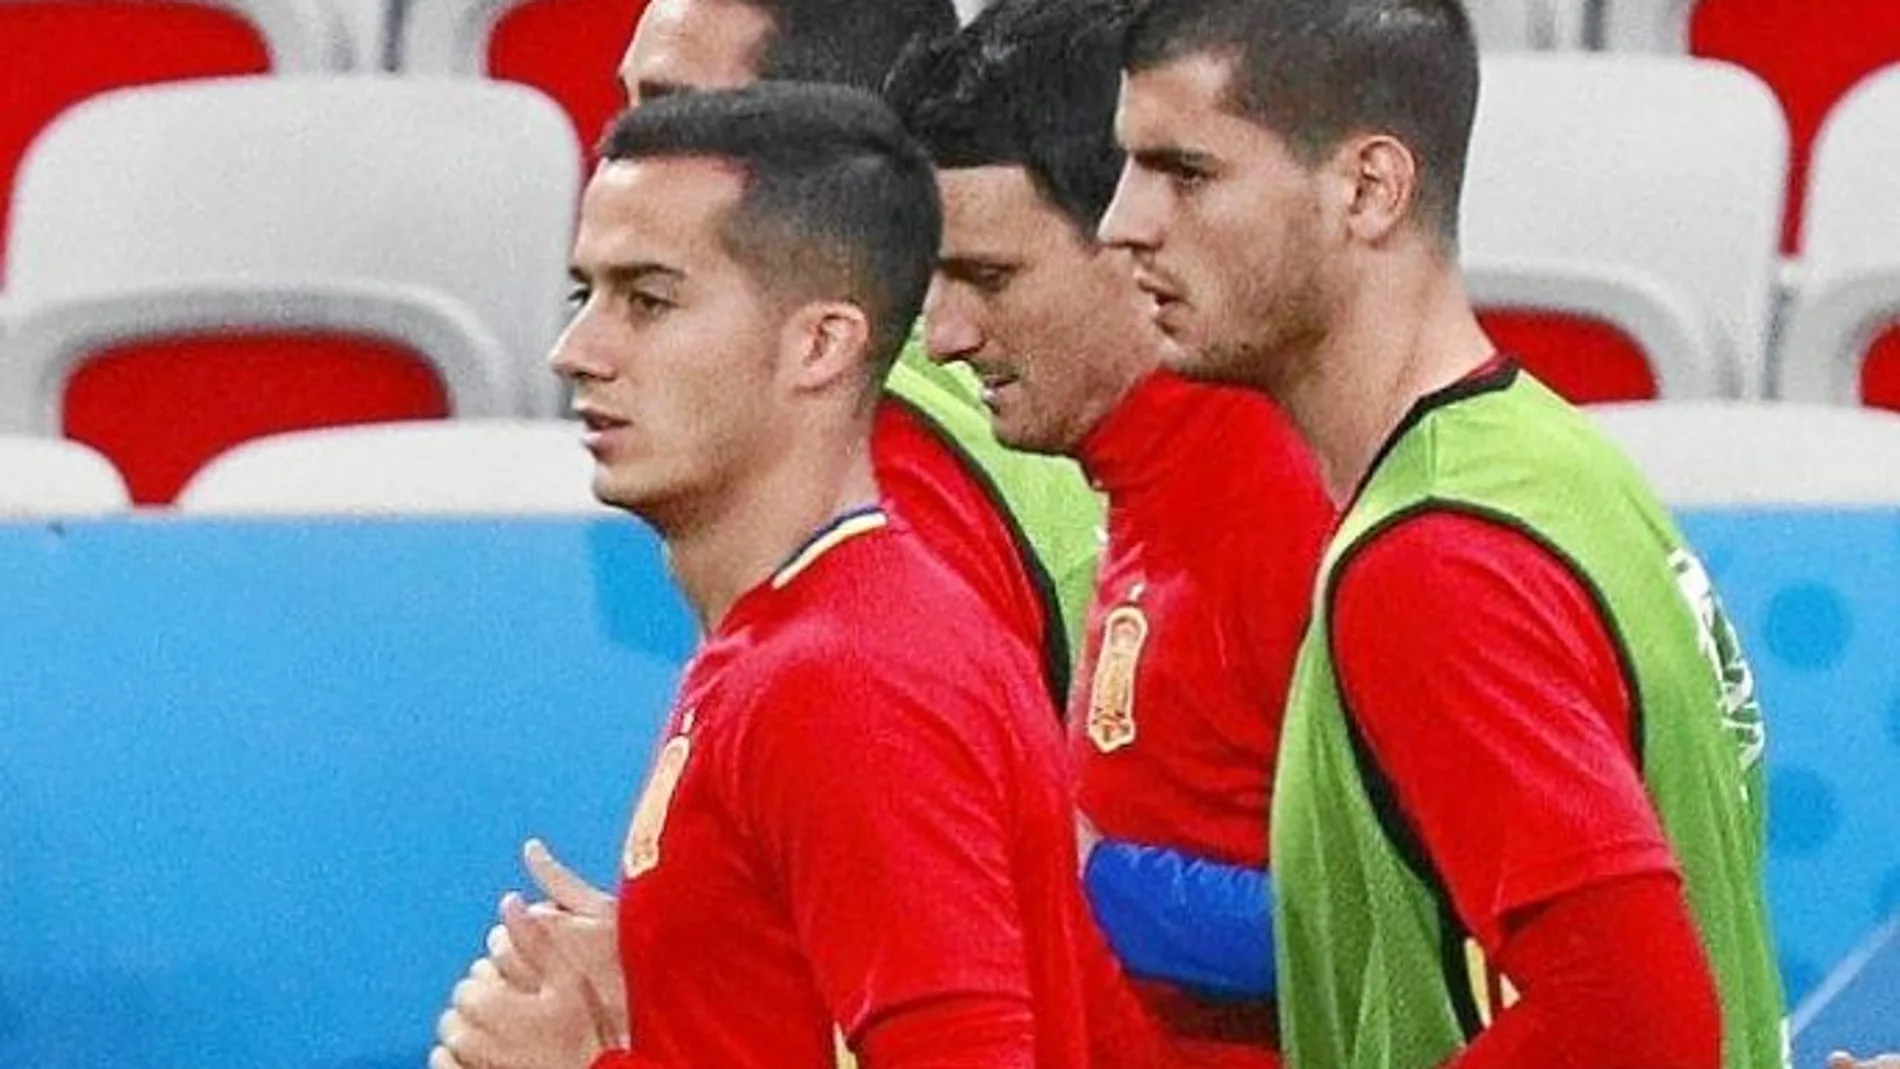 Lucas Vázquez, pensativo durante una parte del entrenamiento que la Selección española llevó a cabo ayer en Niza, donde hoy se mide a Turquía en la segunda jornada del Grupo D